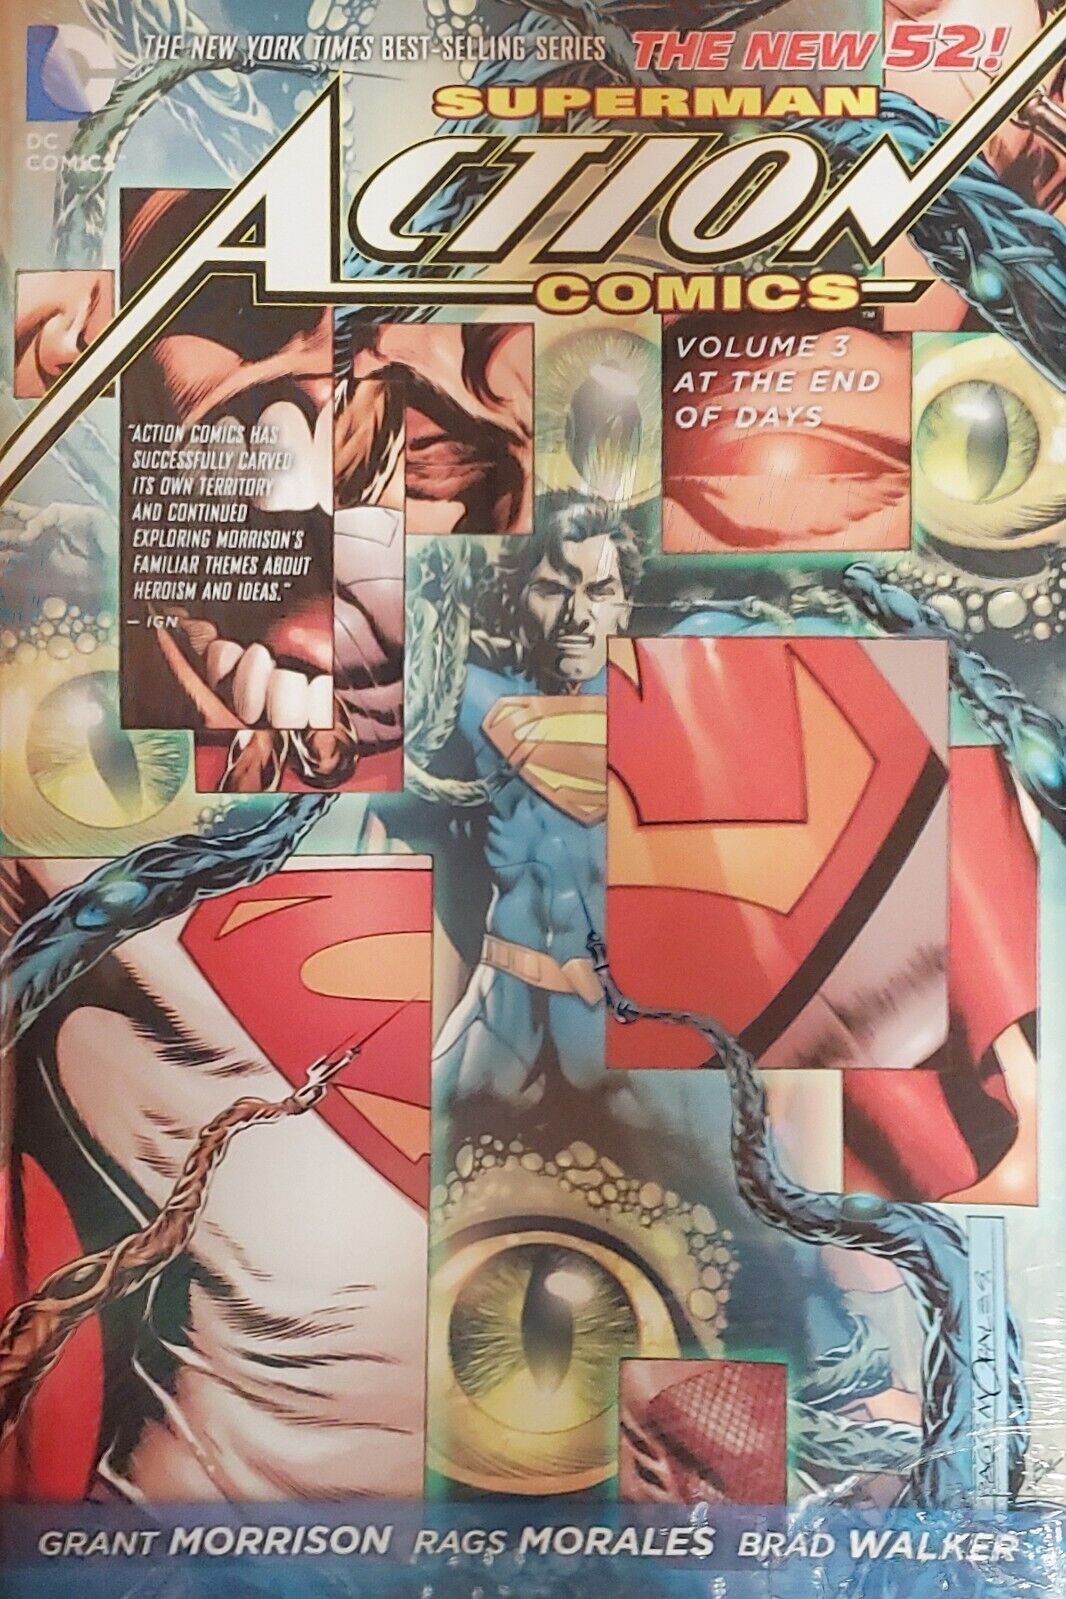 New 52 Action COMICS vol 3.   SUPERMAN "Hardcover "